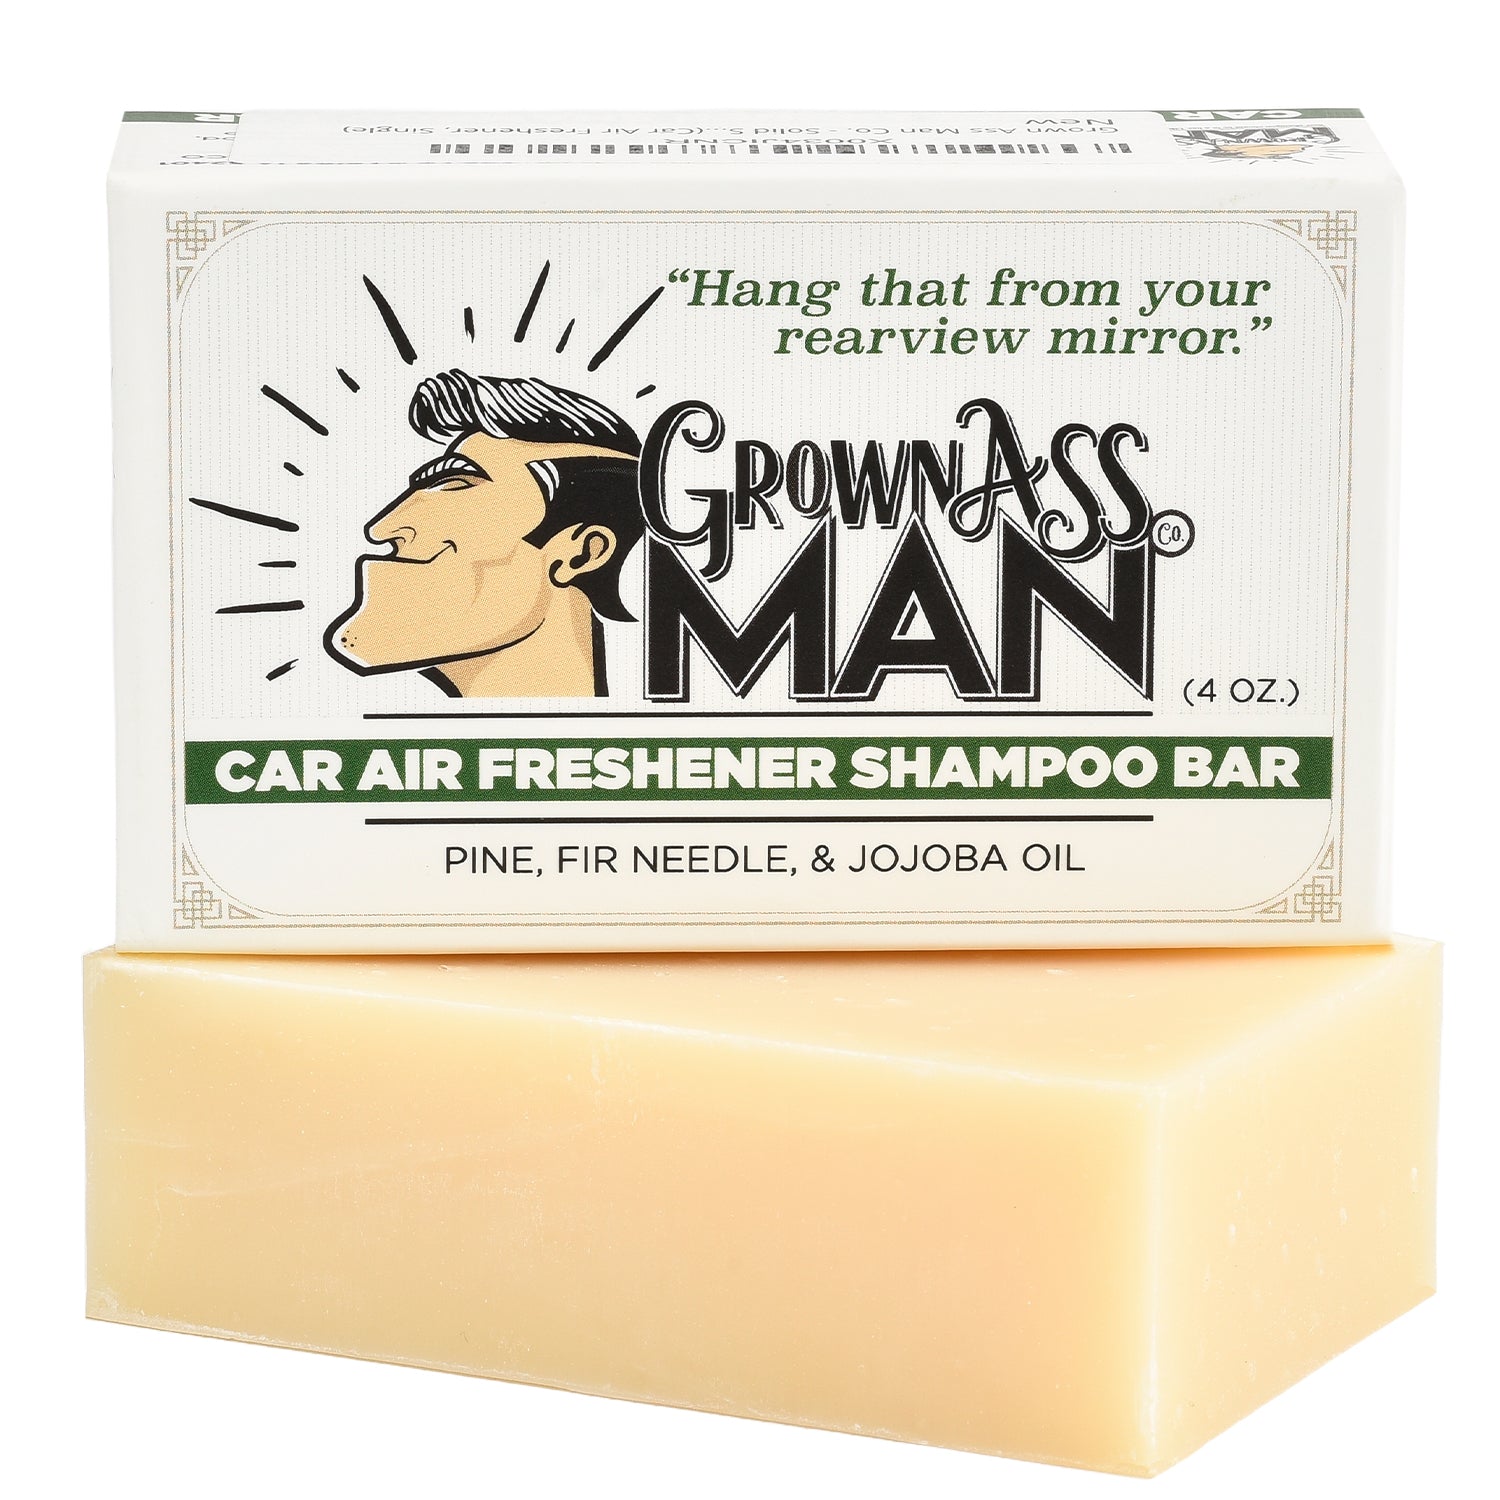 Car Air Freshener Shampoo Bar - 1-Pack